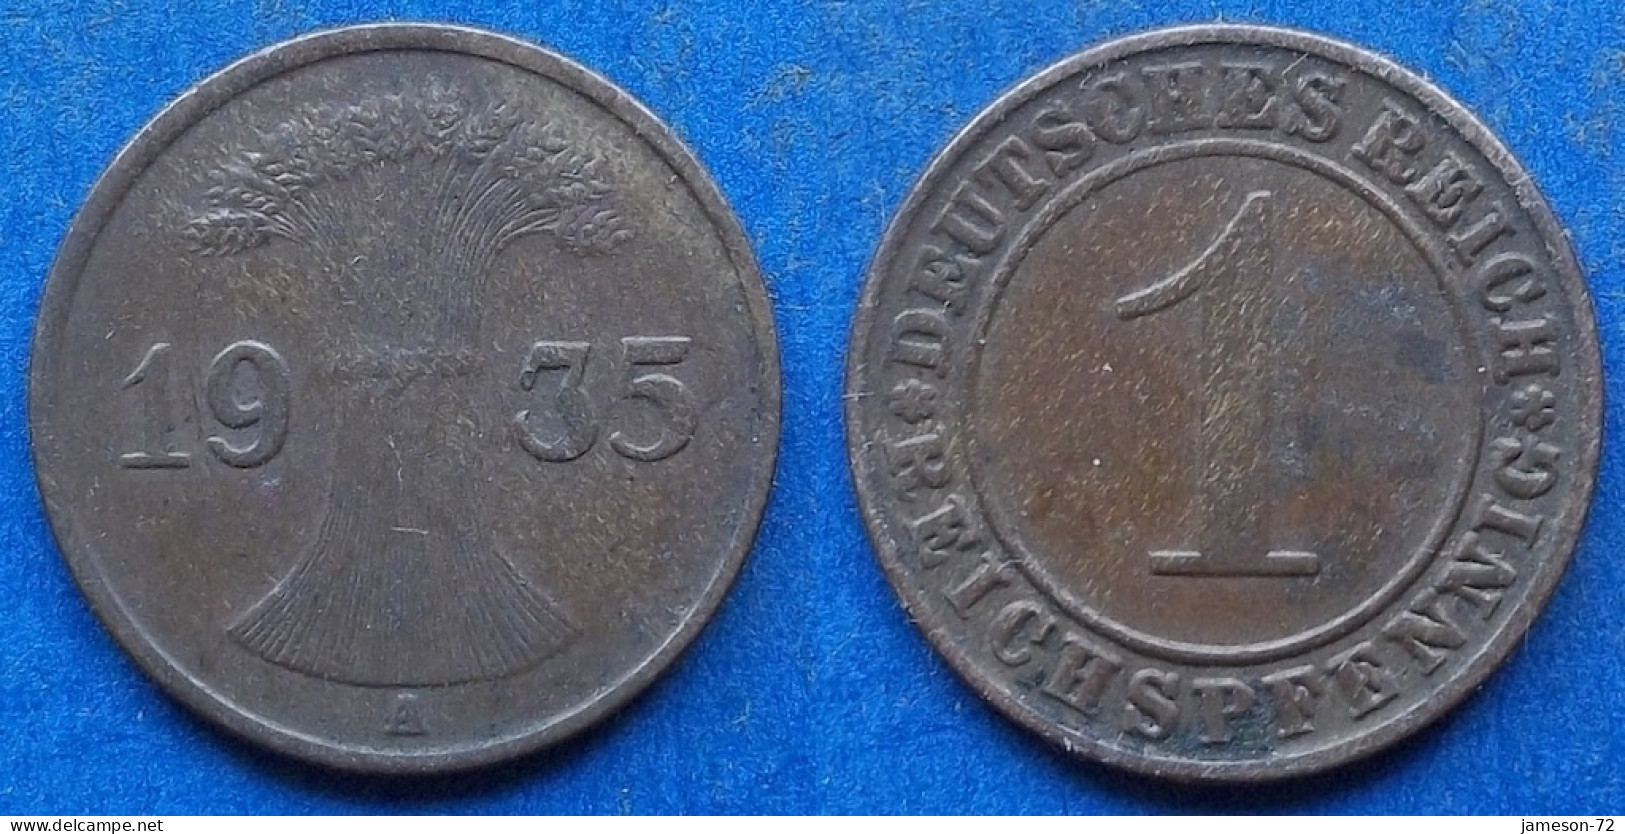 GERMANY - 1 Reichspfennig 1935 A KM# 37 Weimar Republic Reichsmark Coinage (1924-1938) - Edelweiss Coins - 1 Rentenpfennig & 1 Reichspfennig